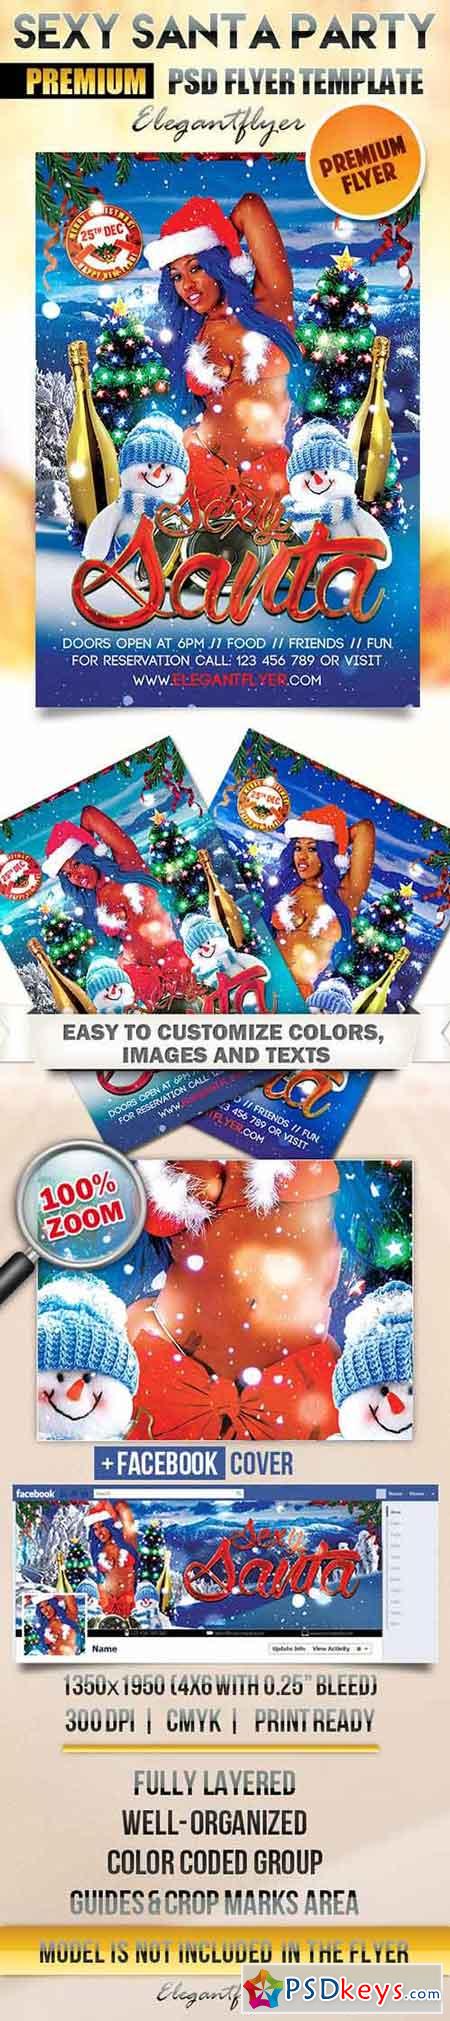 Sexy Santa Party Flyer PSD Template + Facebook Cover